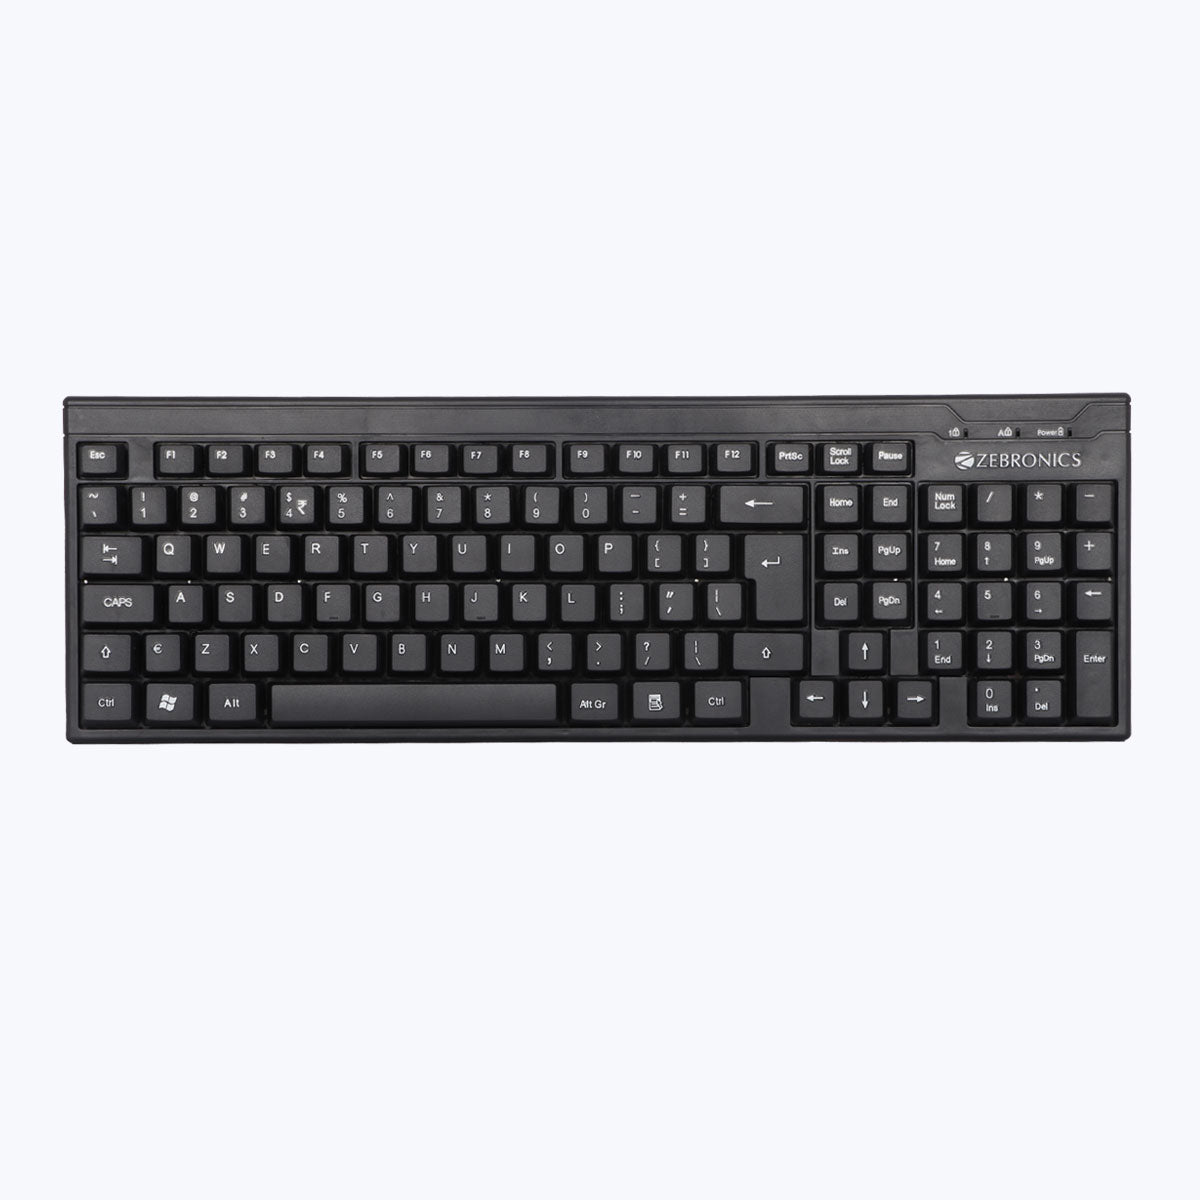 Zeb-Companion 105 - Wireless Keyboard - Zebronics